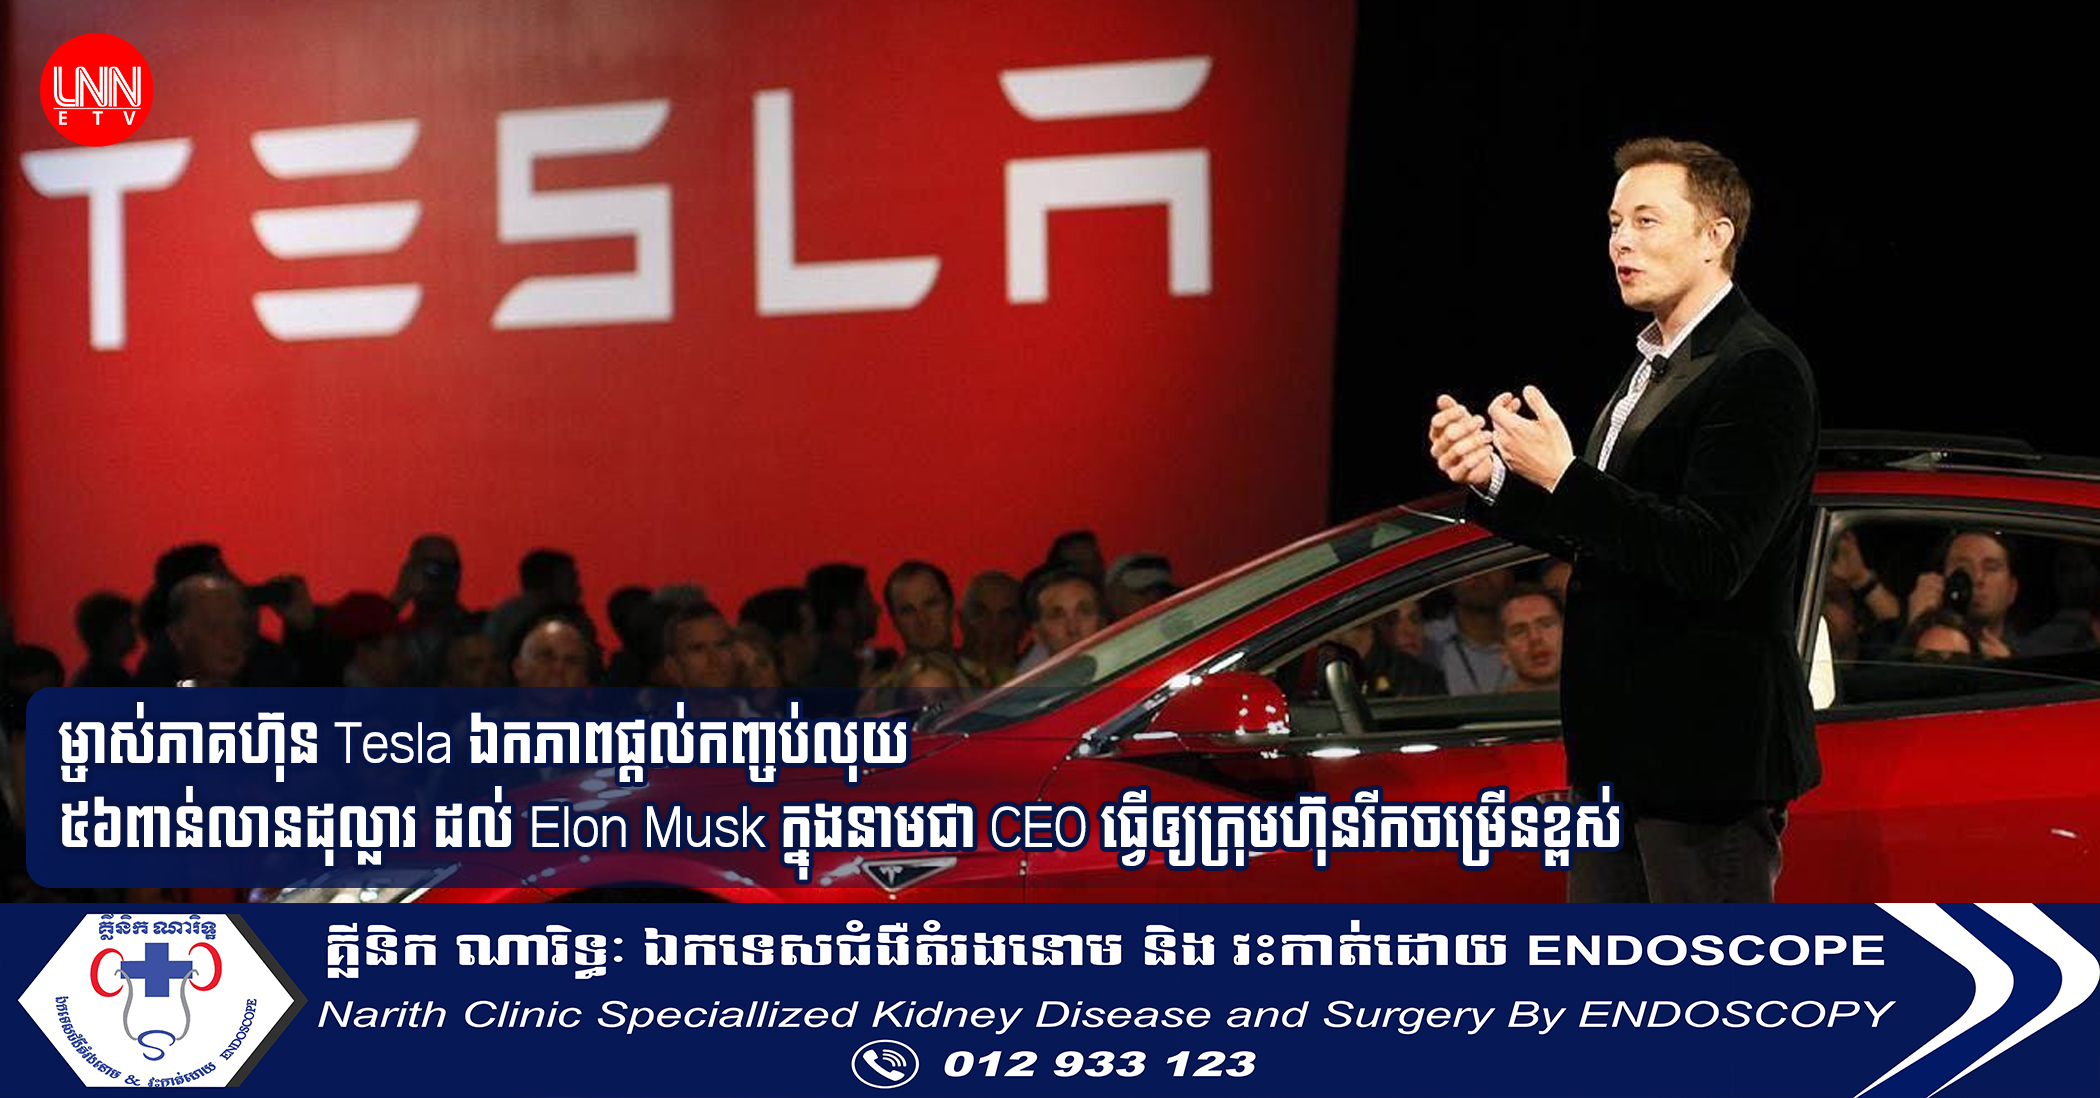 ម្ចាស់ភាគហ៊ុន Tesla ឯកភាពផ្ដល់កញ្ចប់លុយ ៥៦ពាន់លានដុល្លារ ដល់ Elon Musk ក្នុងនាមជា CEO ធ្វើឲ្យក្រុមហ៊ុនរីកចម្រើនខ្ពស់